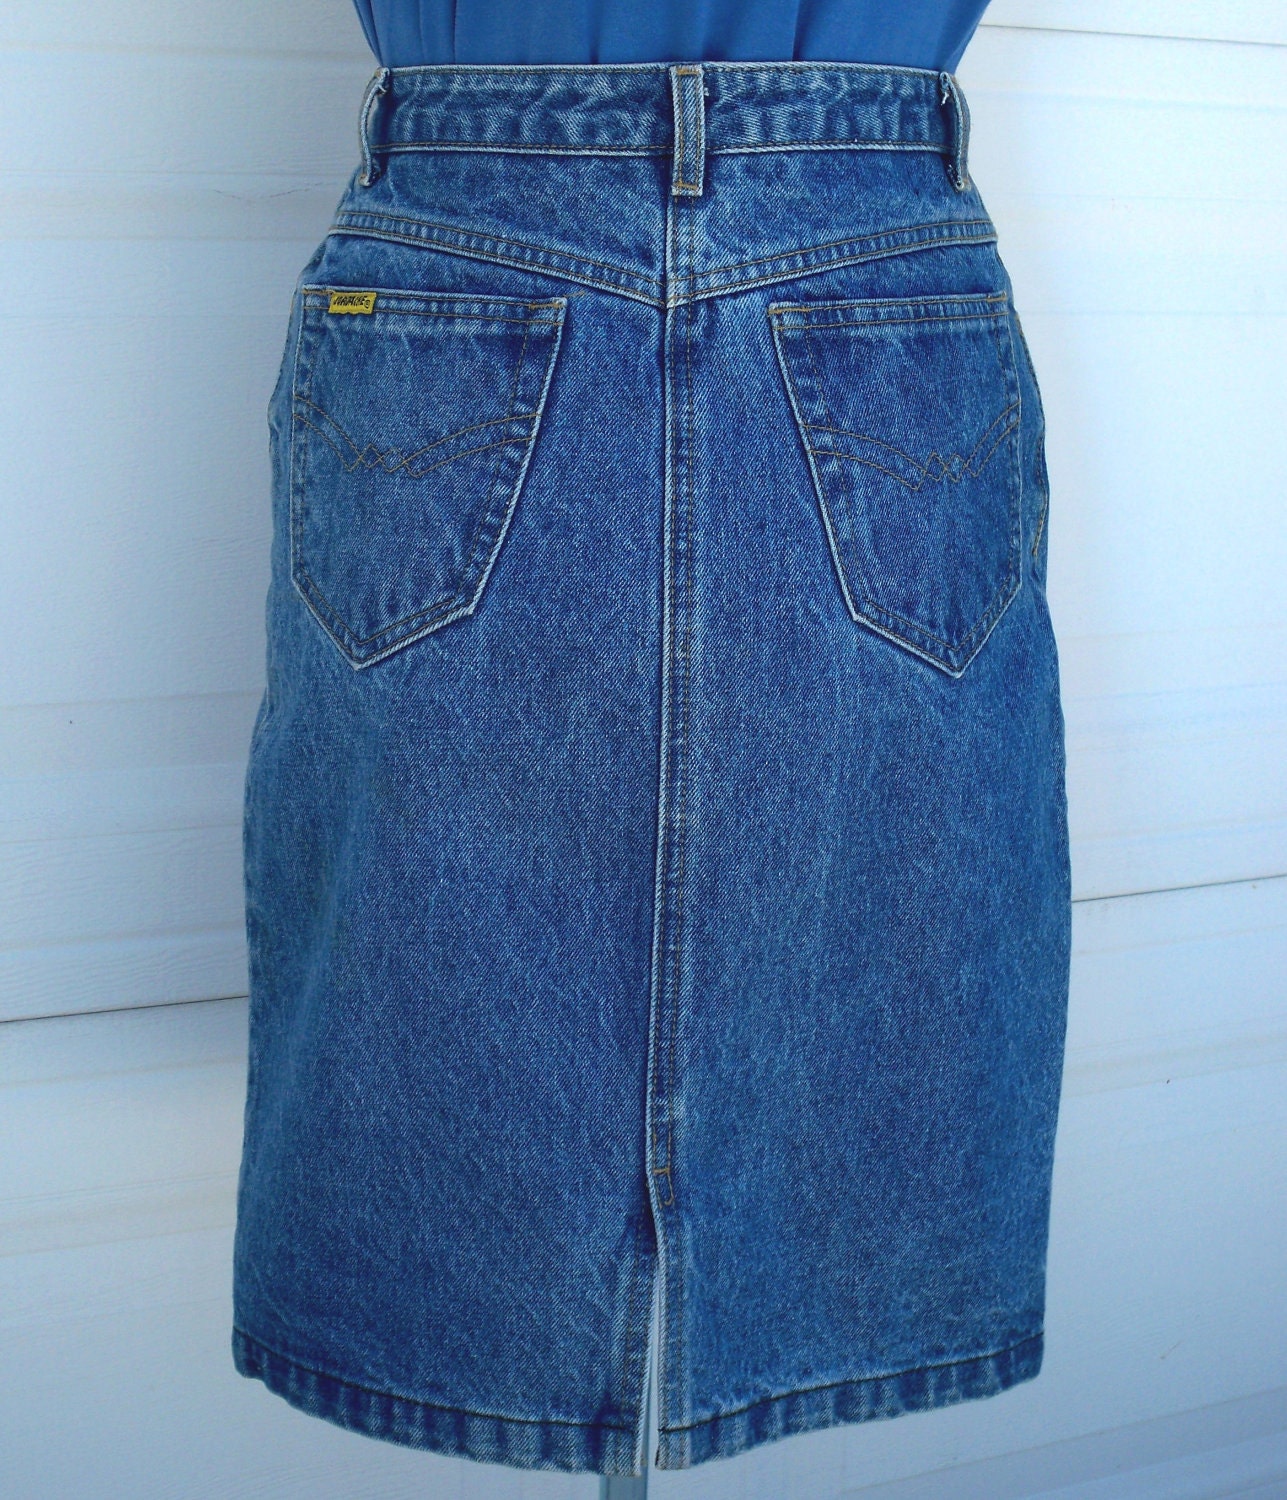 Jordache Jean Skirt 1980s Denim Short Straight Vintage